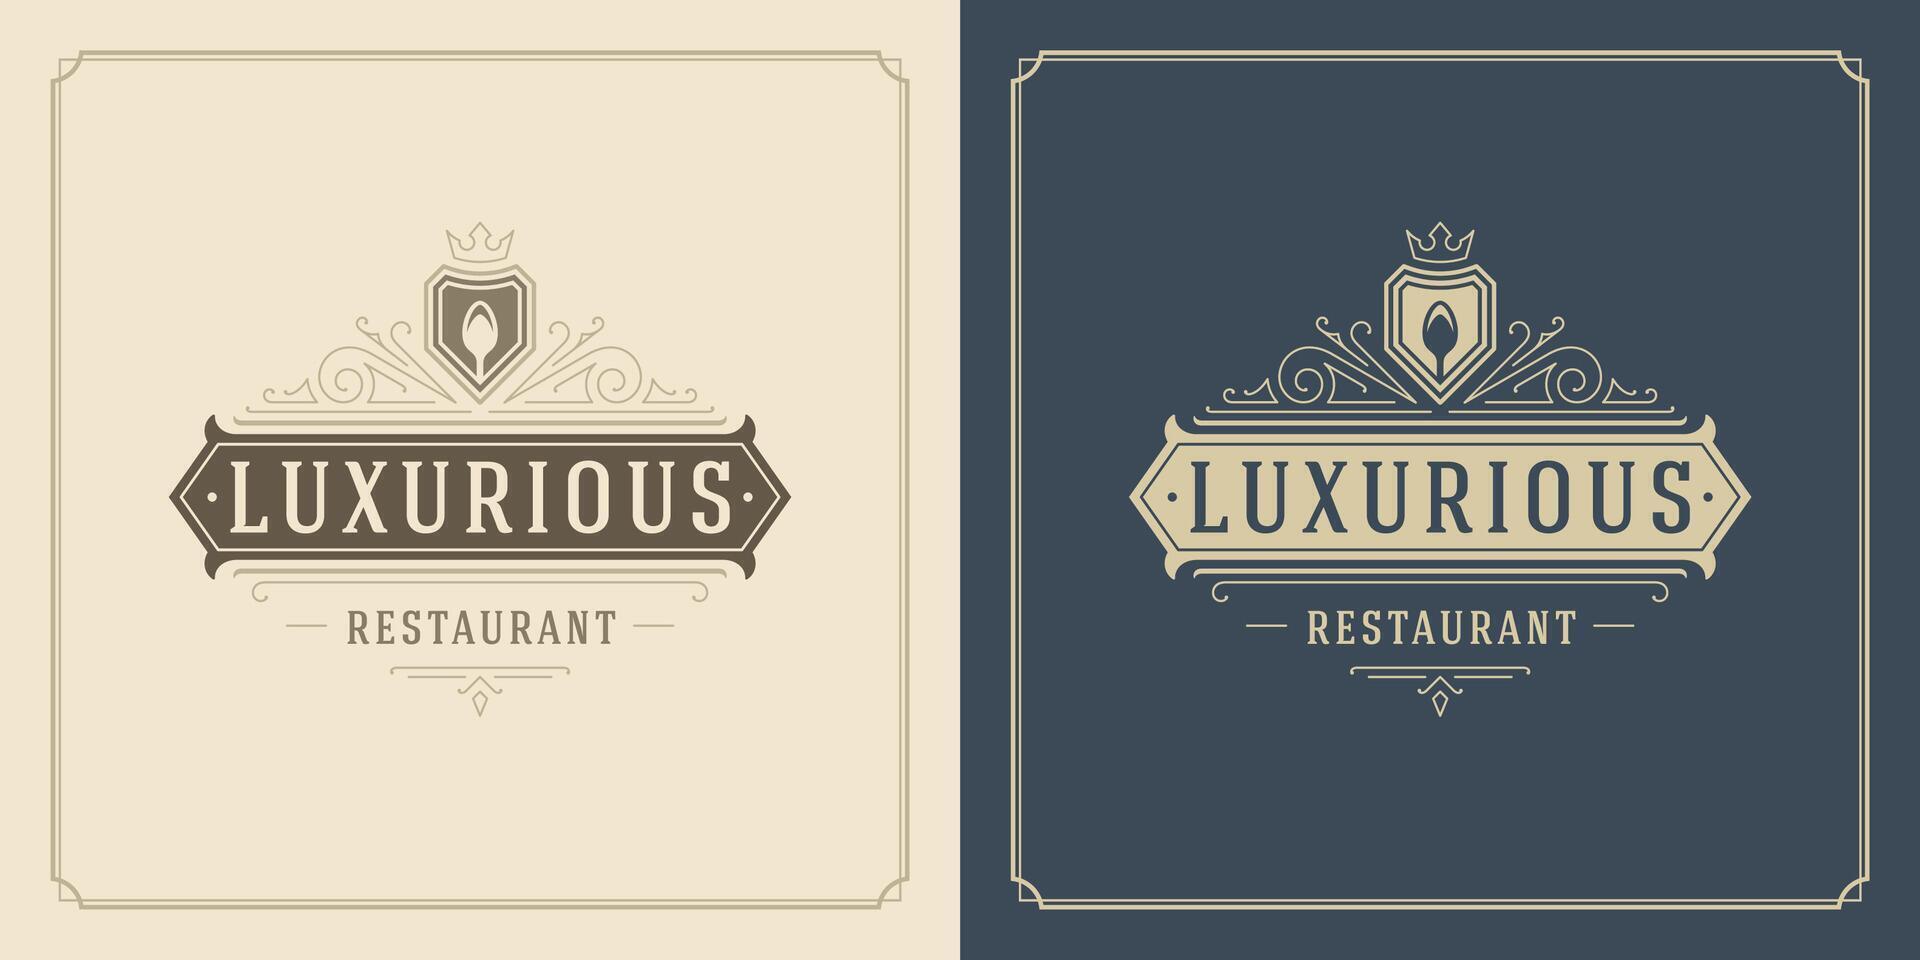 restaurant logo sjabloon illustratie voor menu en cafe teken vector